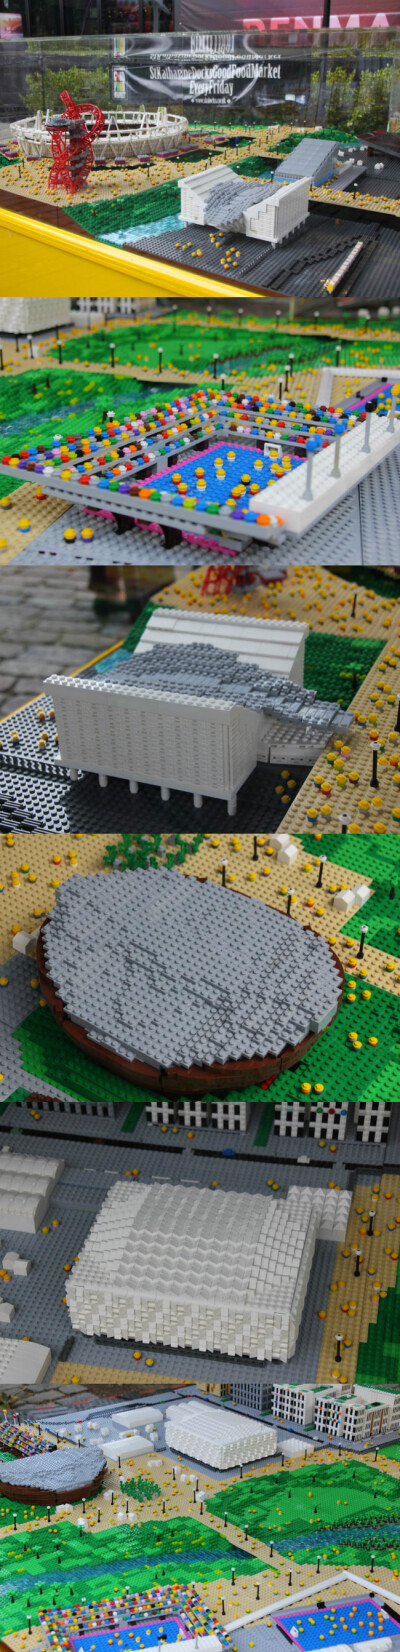 为了庆祝伦敦2012奥运会，丹麦乐高（LEGO）公司委托设计师Warren Elsmore用乐高积木搭出了伦敦奥运会体育馆。该项目耗时300个小时，用掉大约25万块积木，其中大部分积木为“1×1”的单块积木，整个制作周期长达3周，…